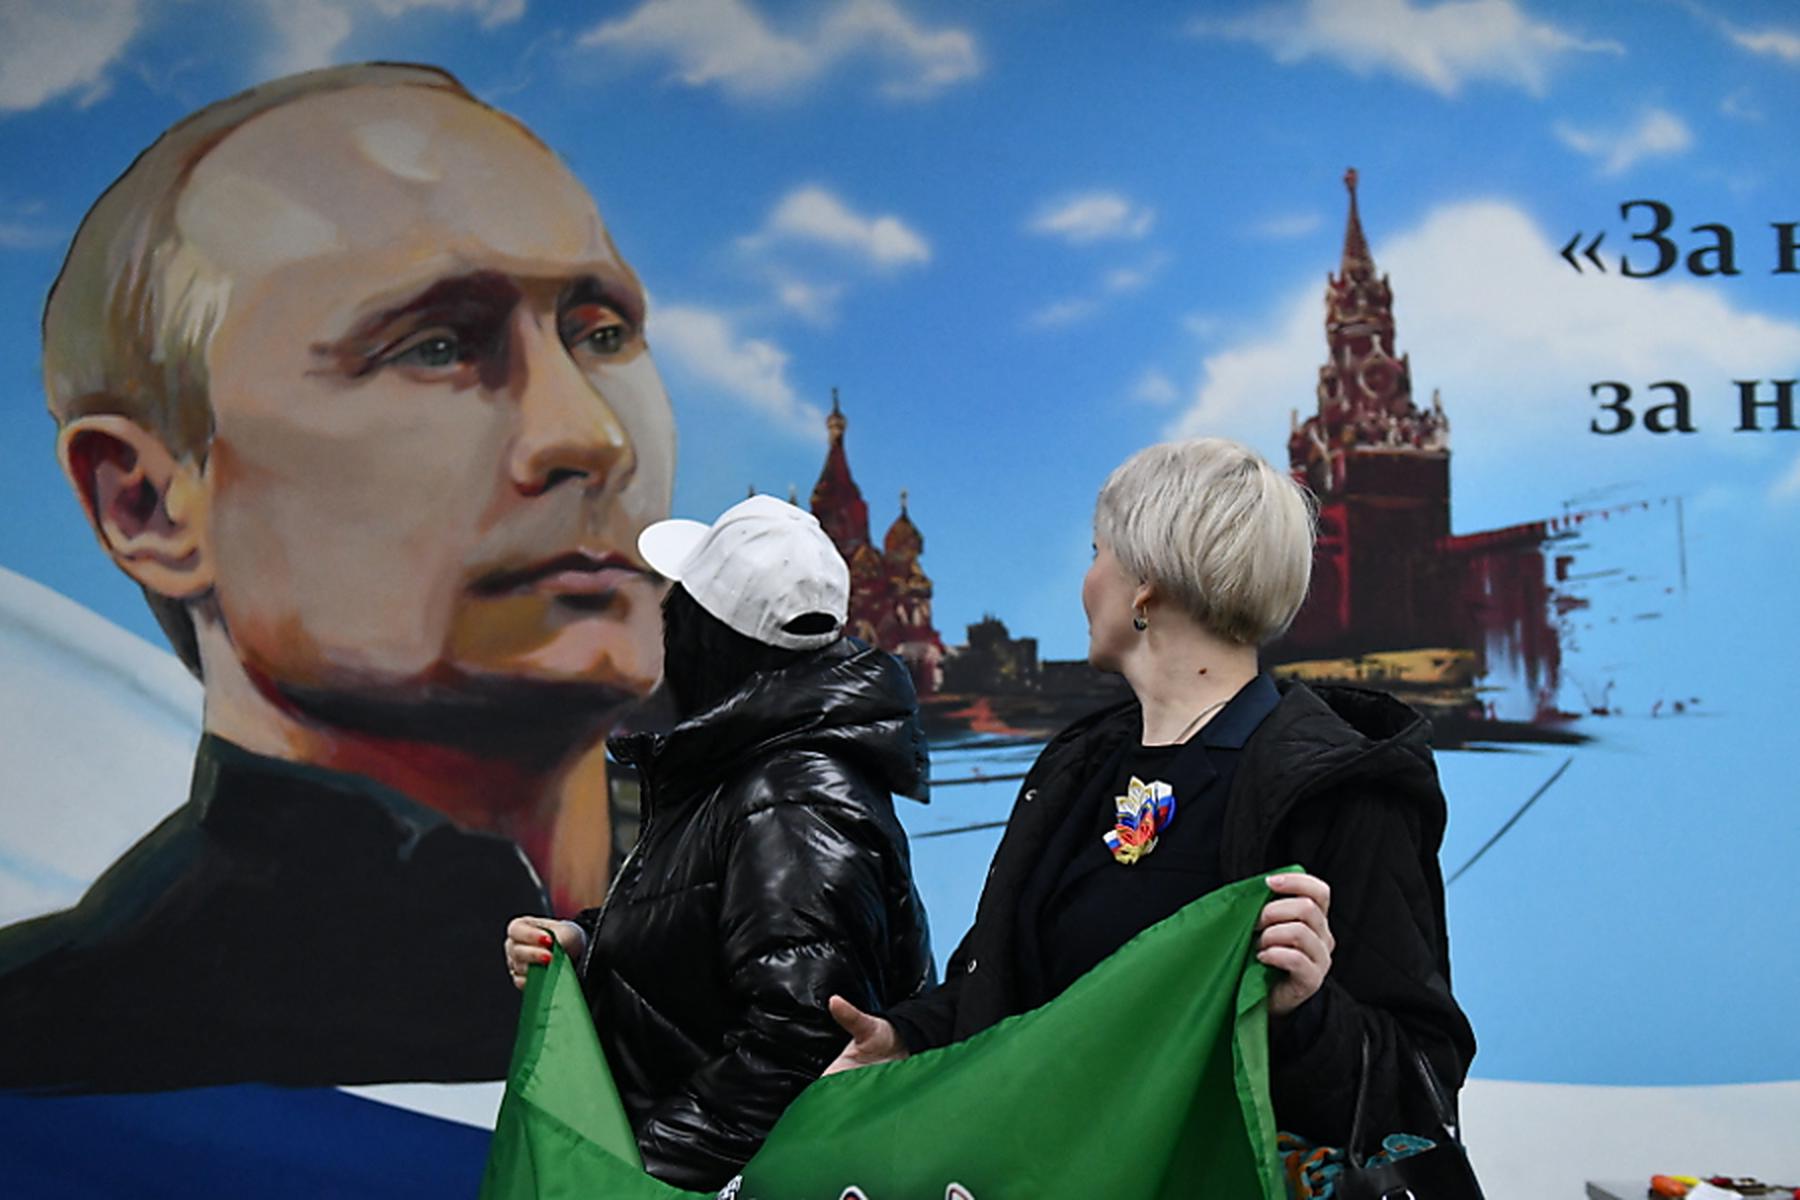 Moskau: Russische Präsidentenwahl geht weiter